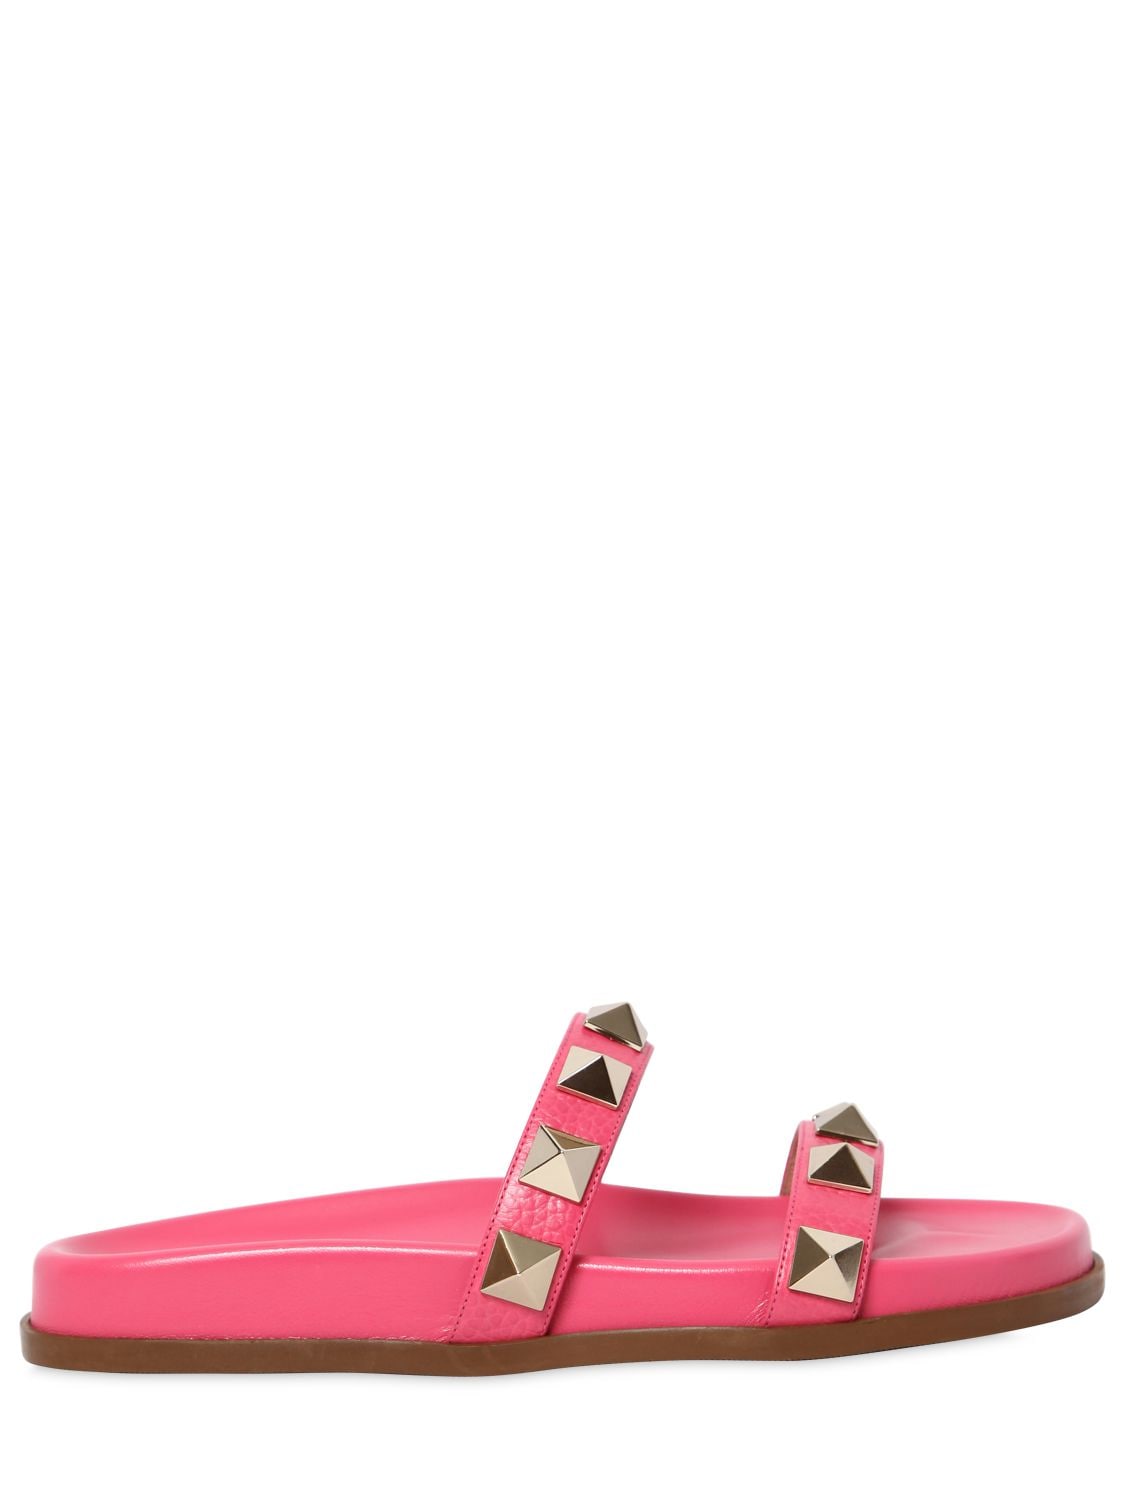 Valentino Garavani 20mm Lock Leather Sandals In Pink | ModeSens